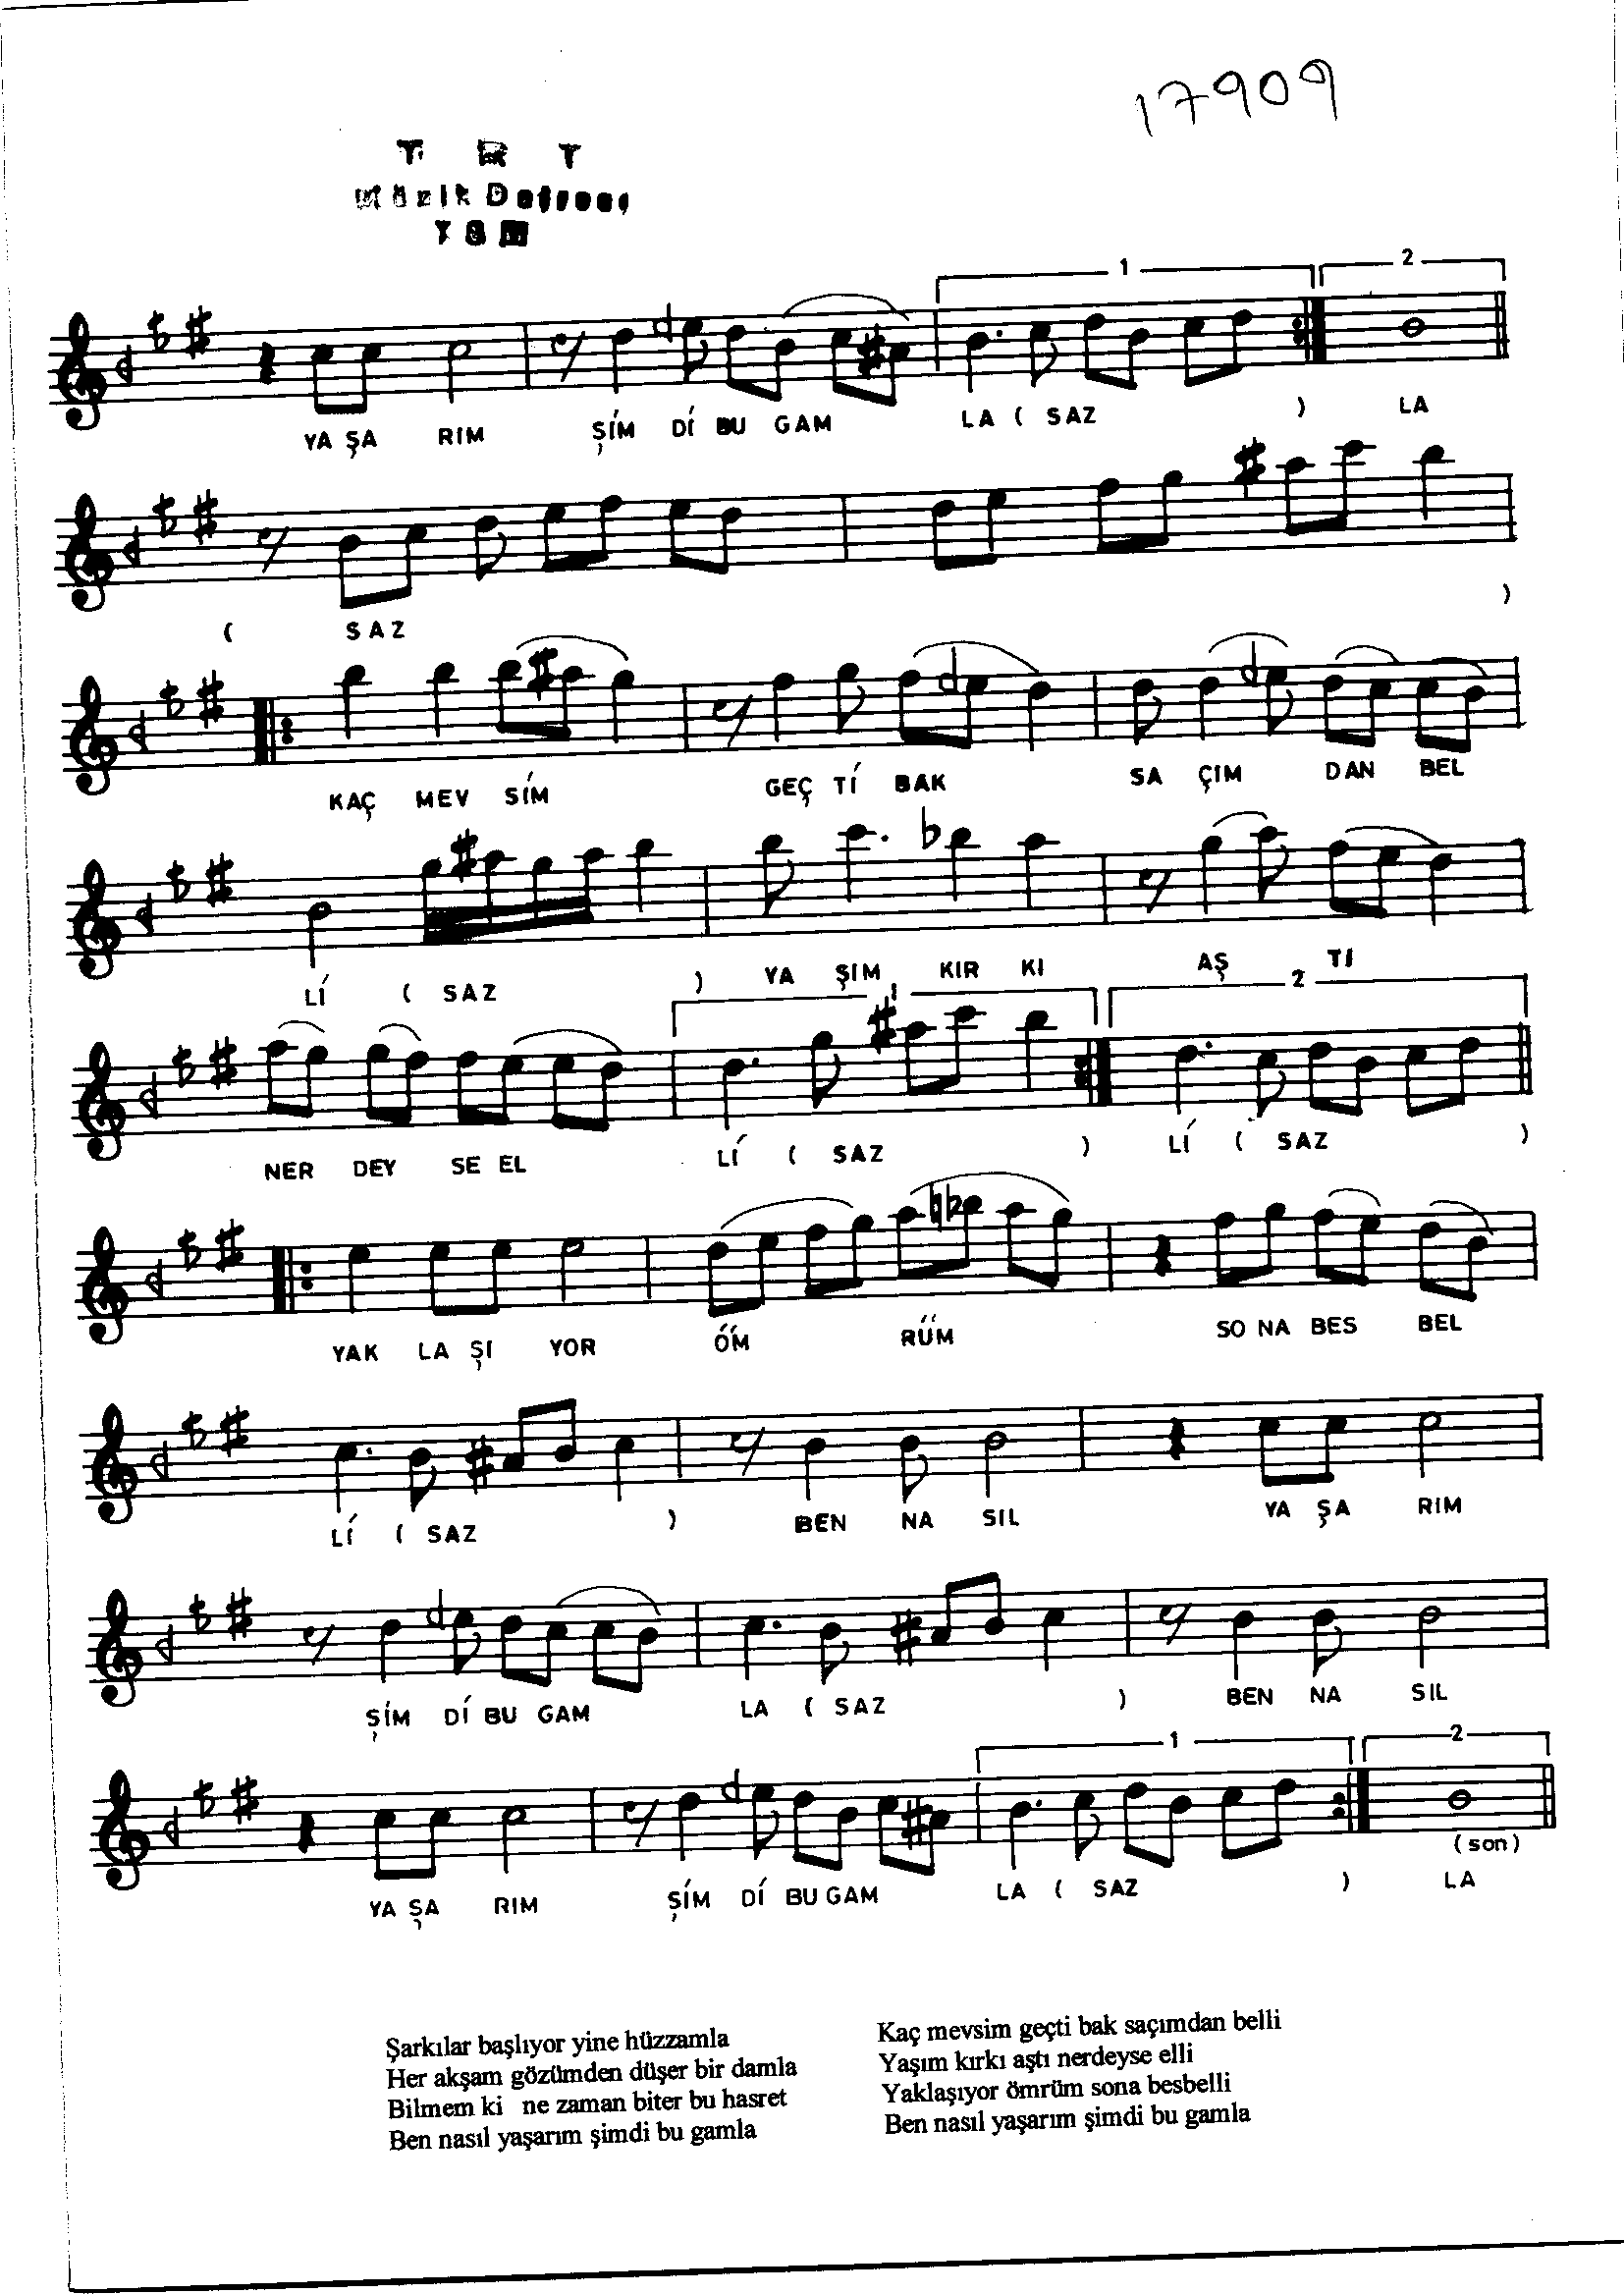 Hüzzâm - Şarkı - Faruk Şahin - Sayfa 2